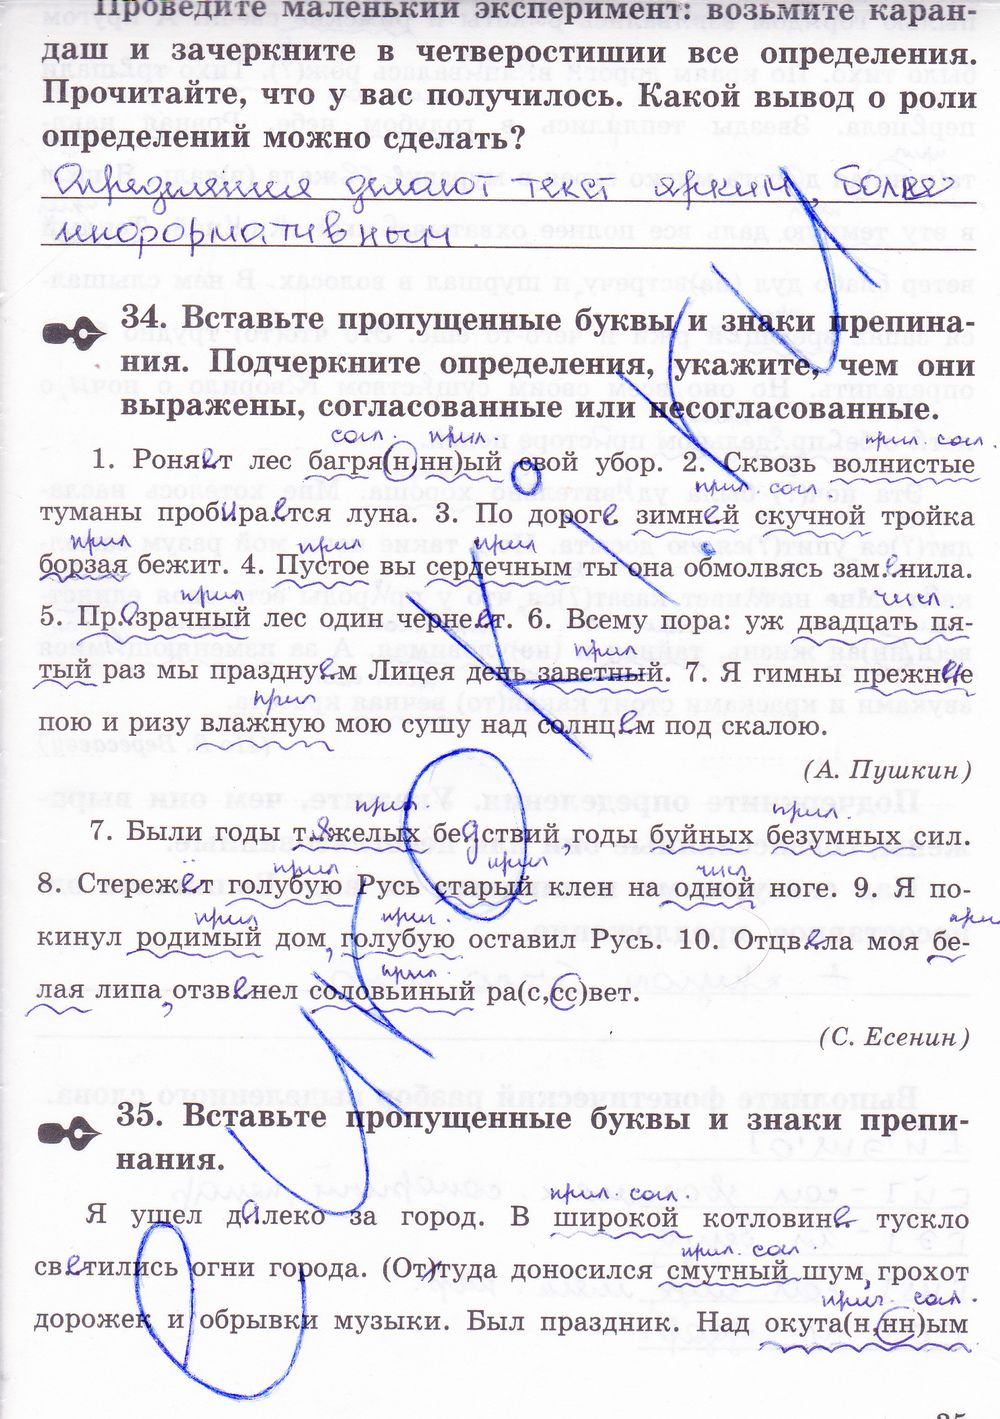 ГДЗ Русский язык 8 класс - стр. 35